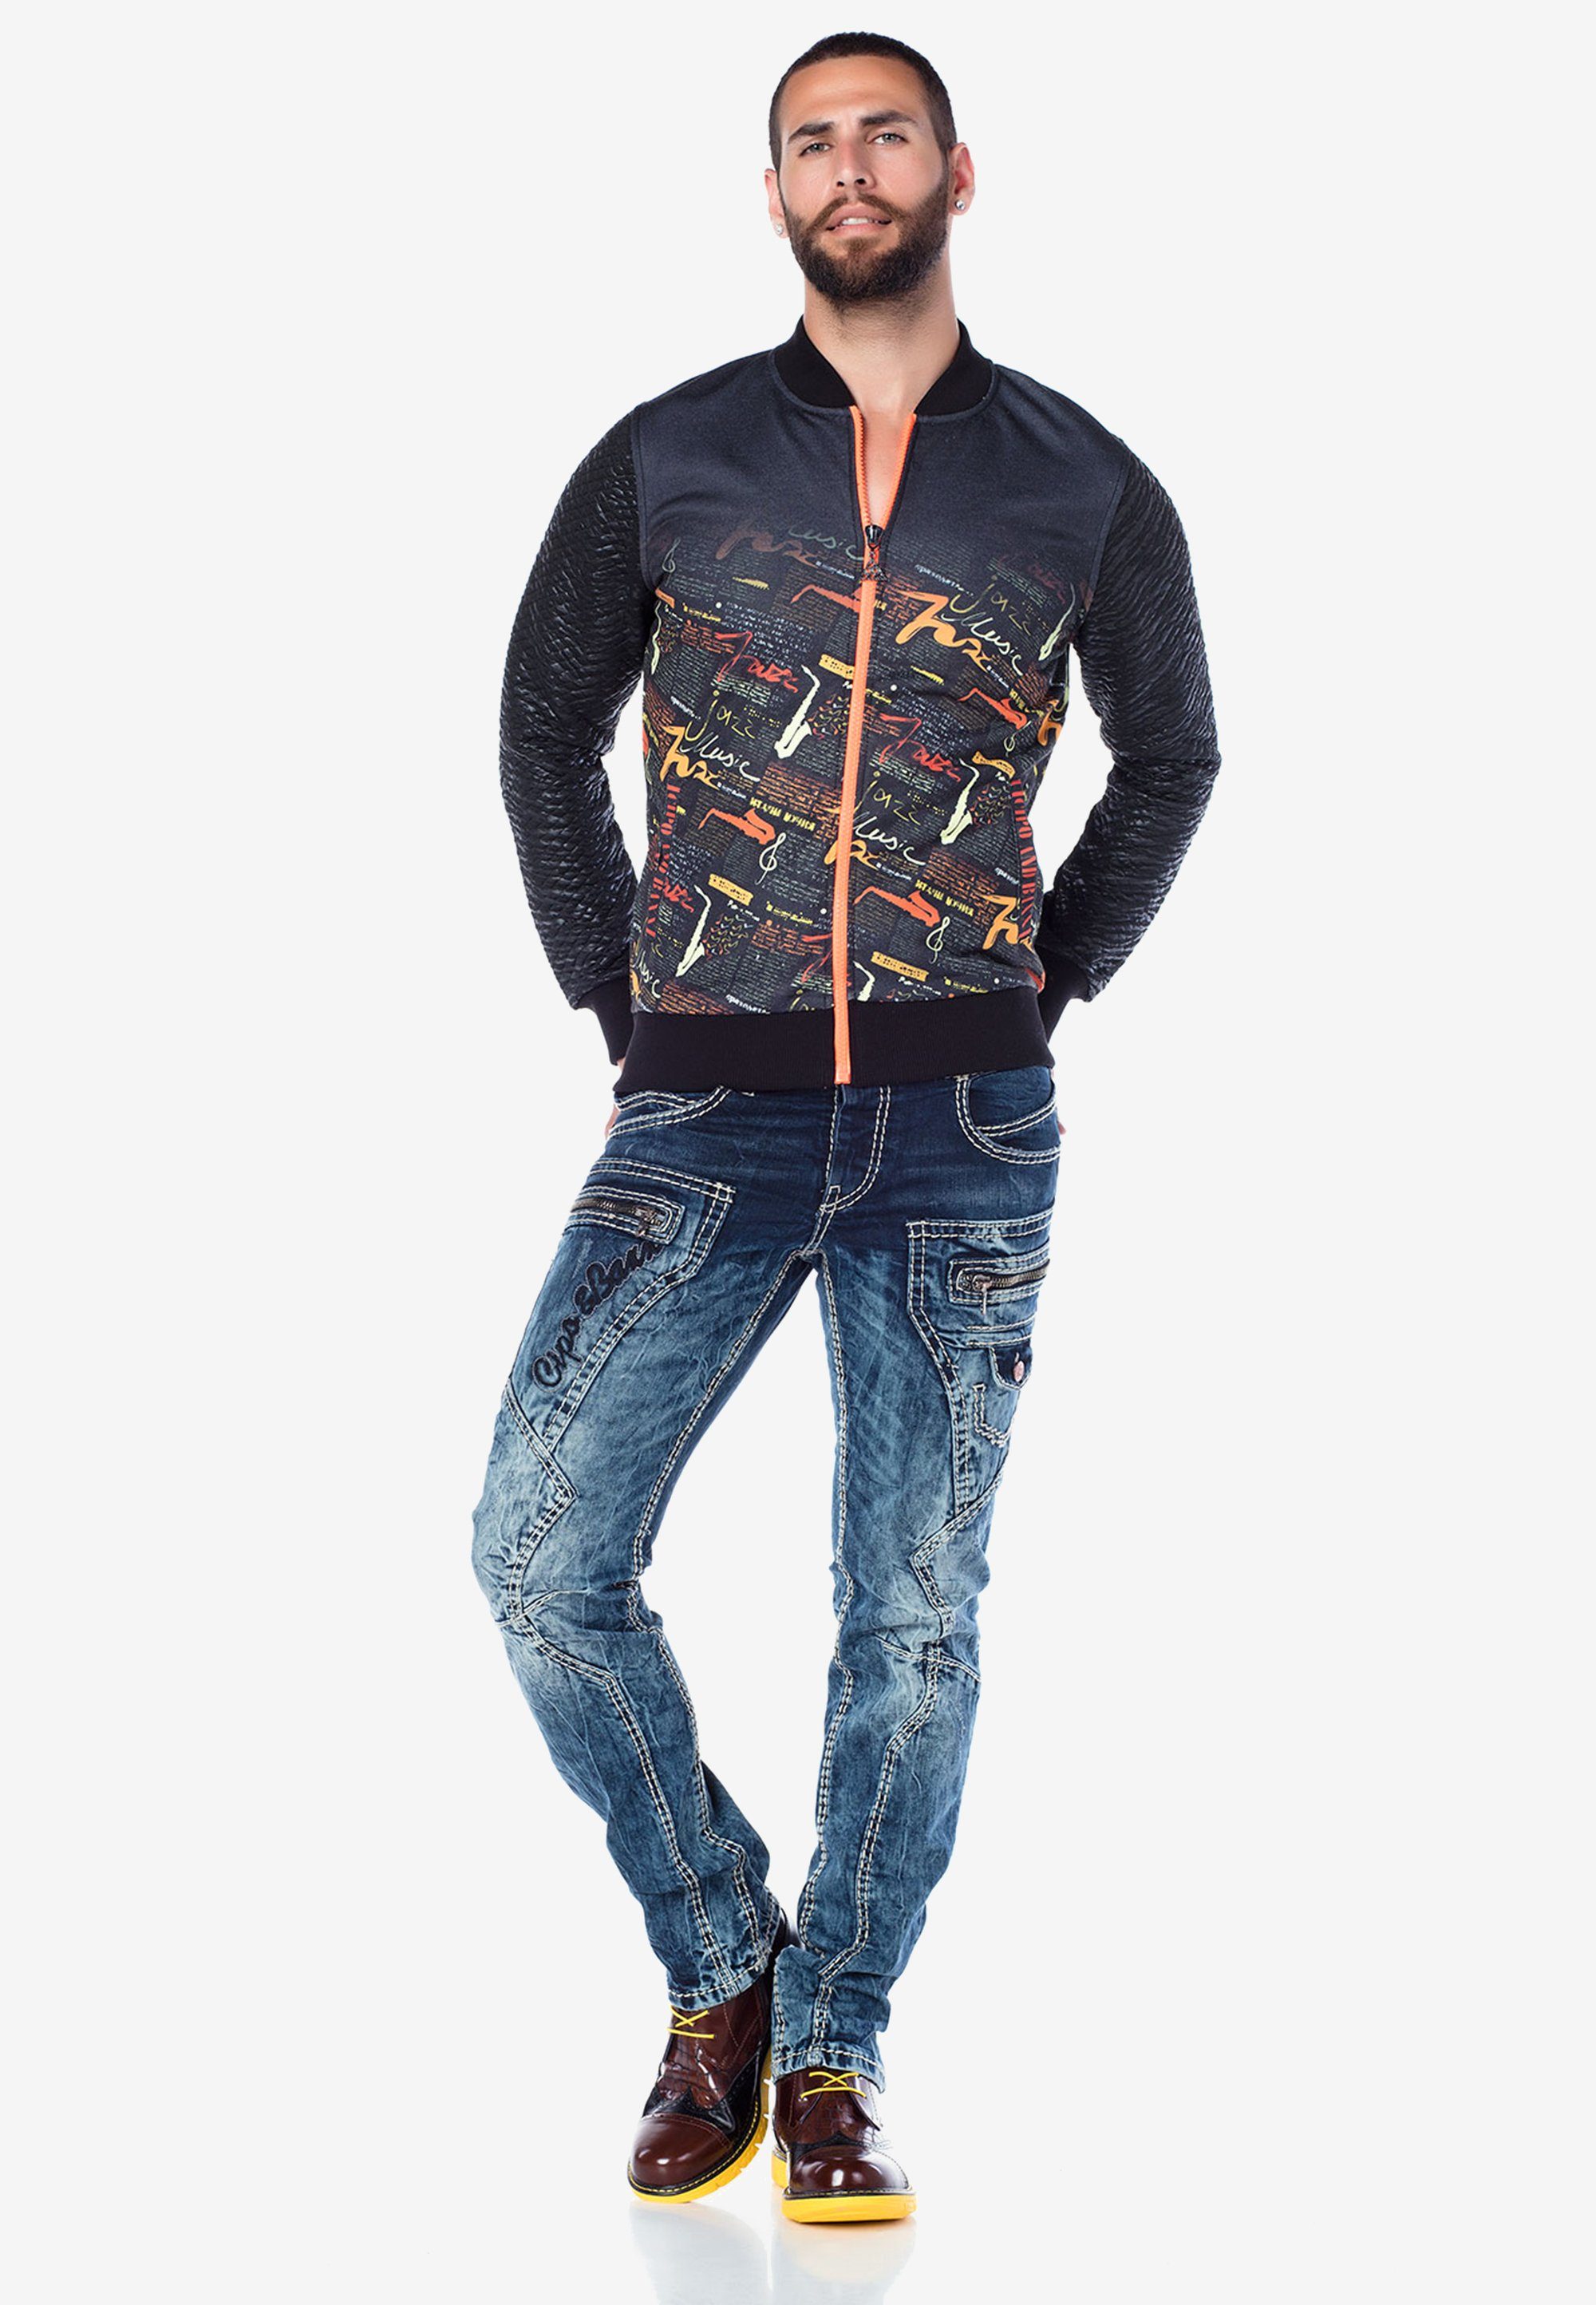 Cipo & Baxx Bequeme Jeans mit lässigem Taschen-Design